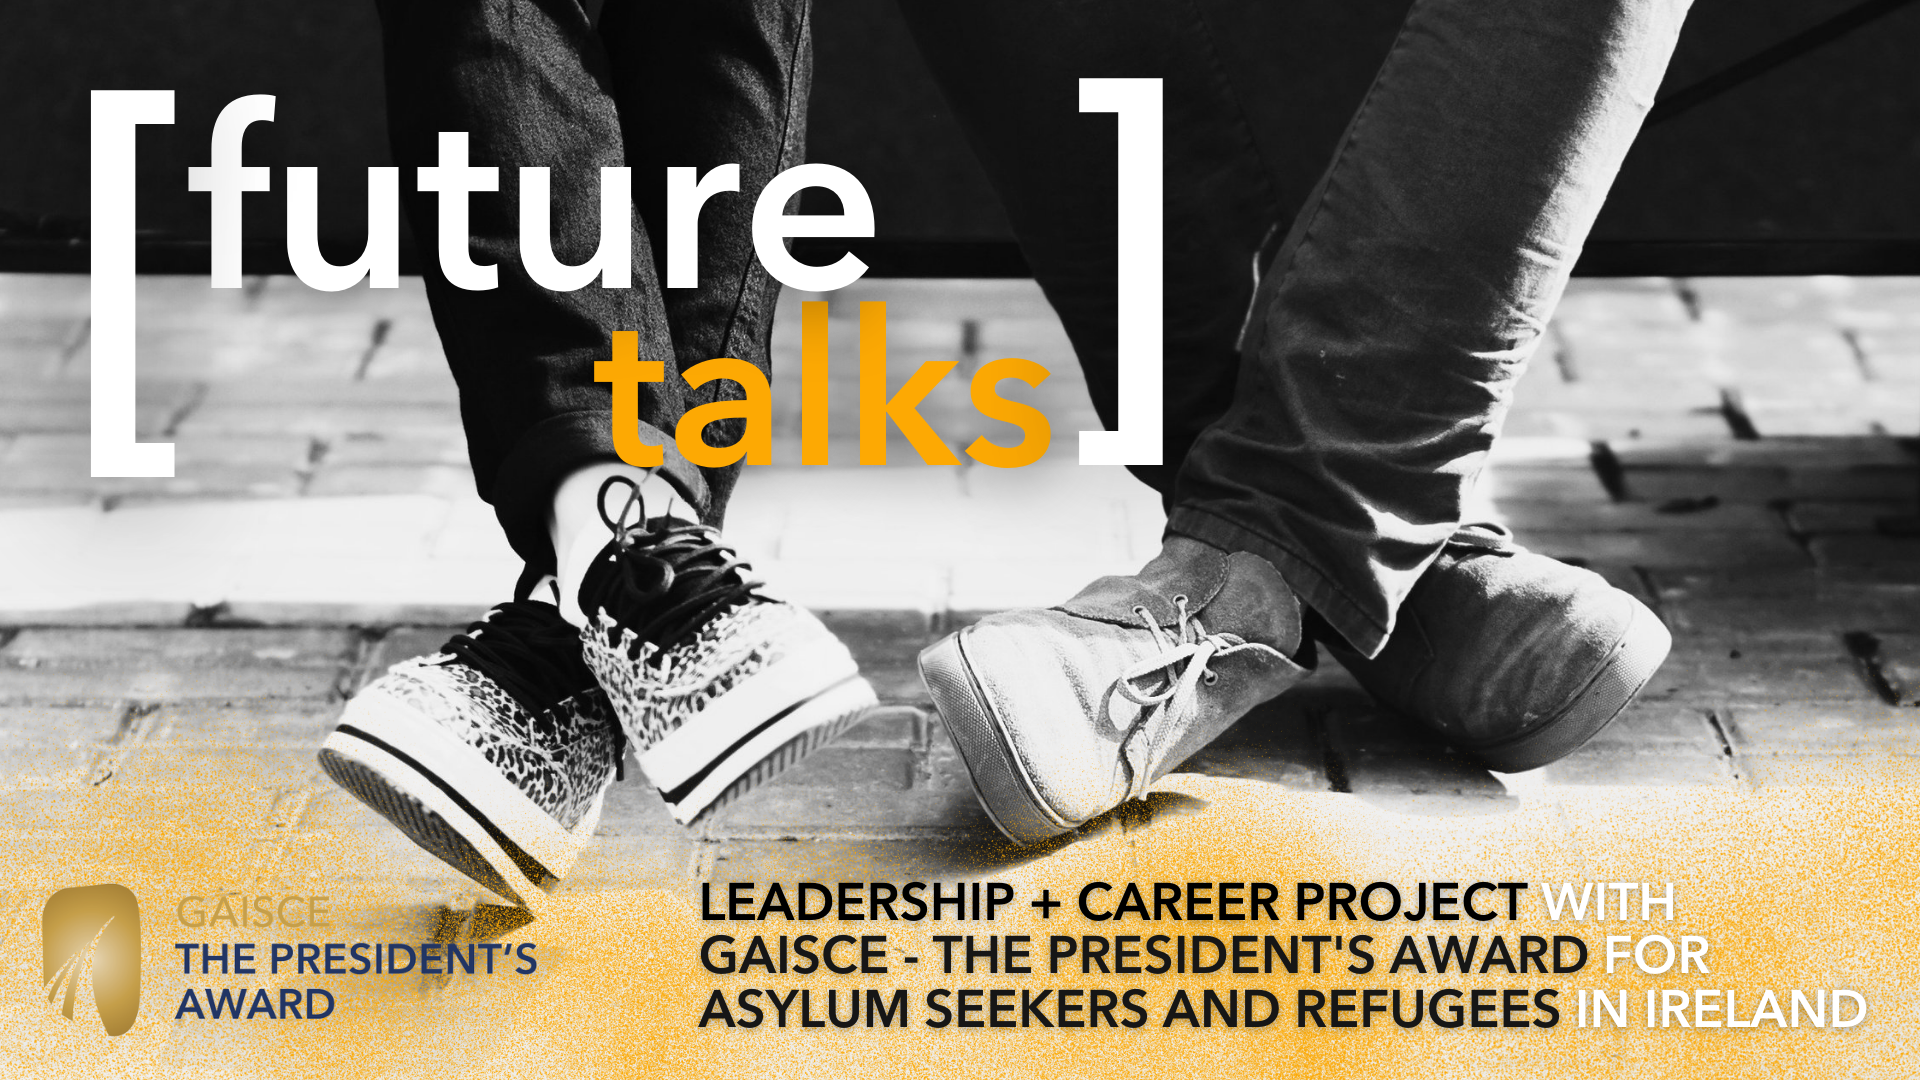 Future Talks - un progetto di leadership e carriera con Gaisce per richiedenti asilo e rifugiati in Irlanda